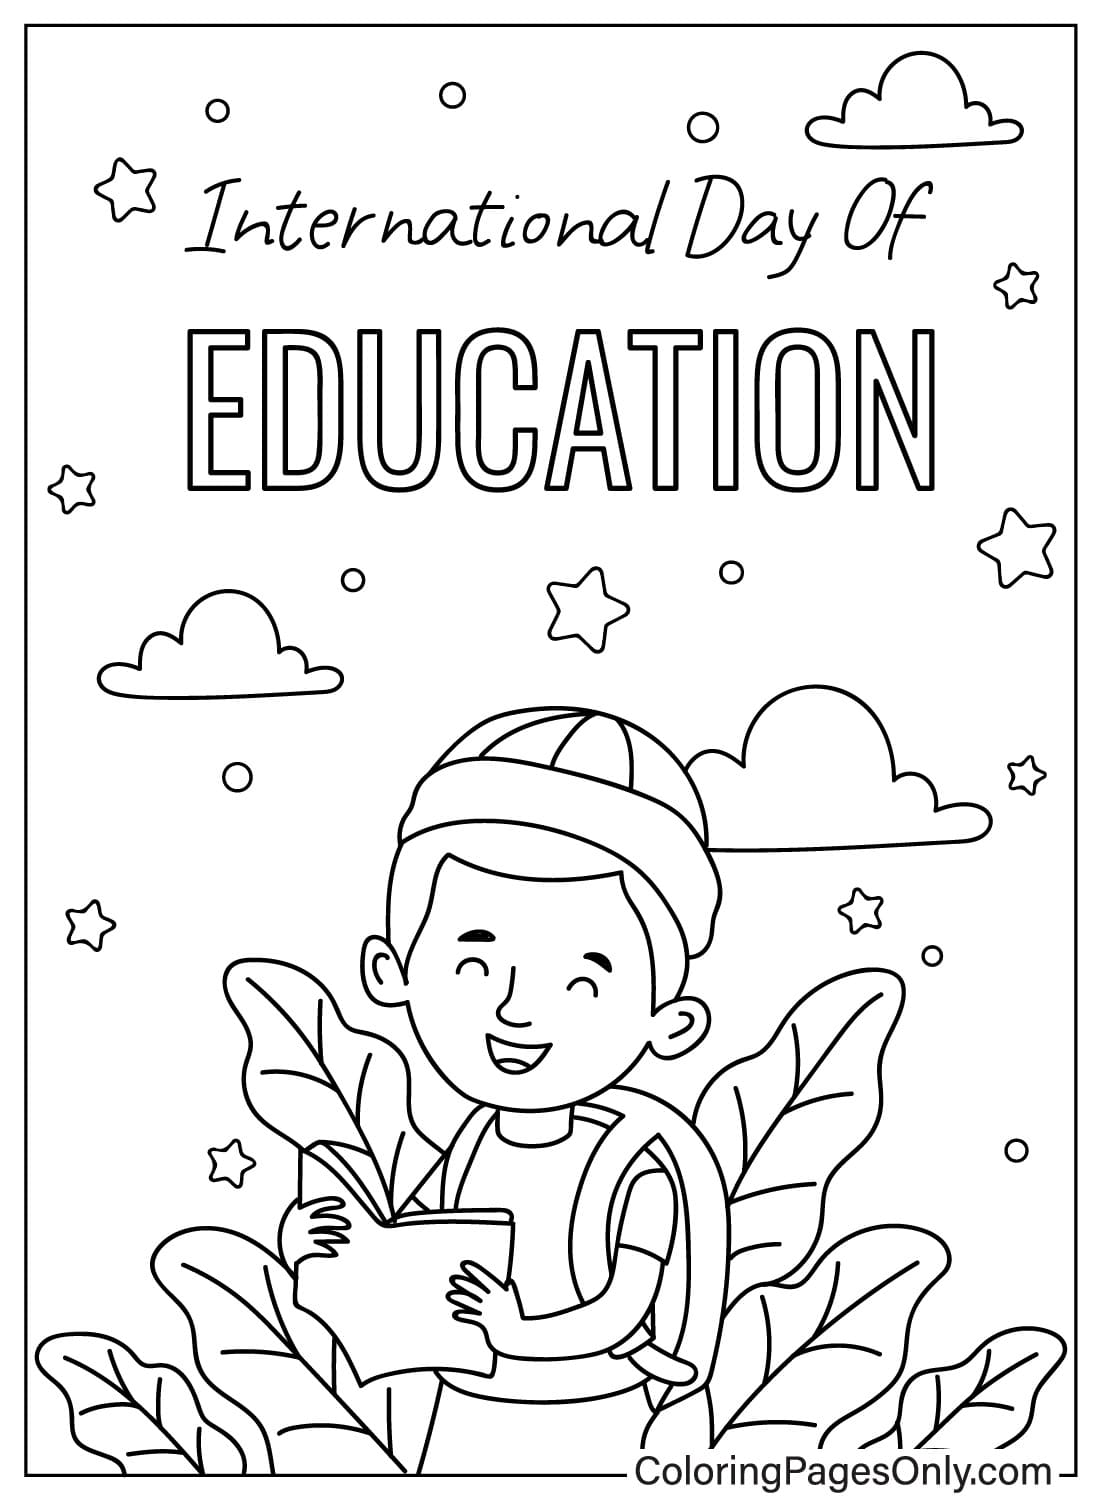 صفحة تلوين اليوم العالمي للتعليم من اليوم العالمي للتعليم